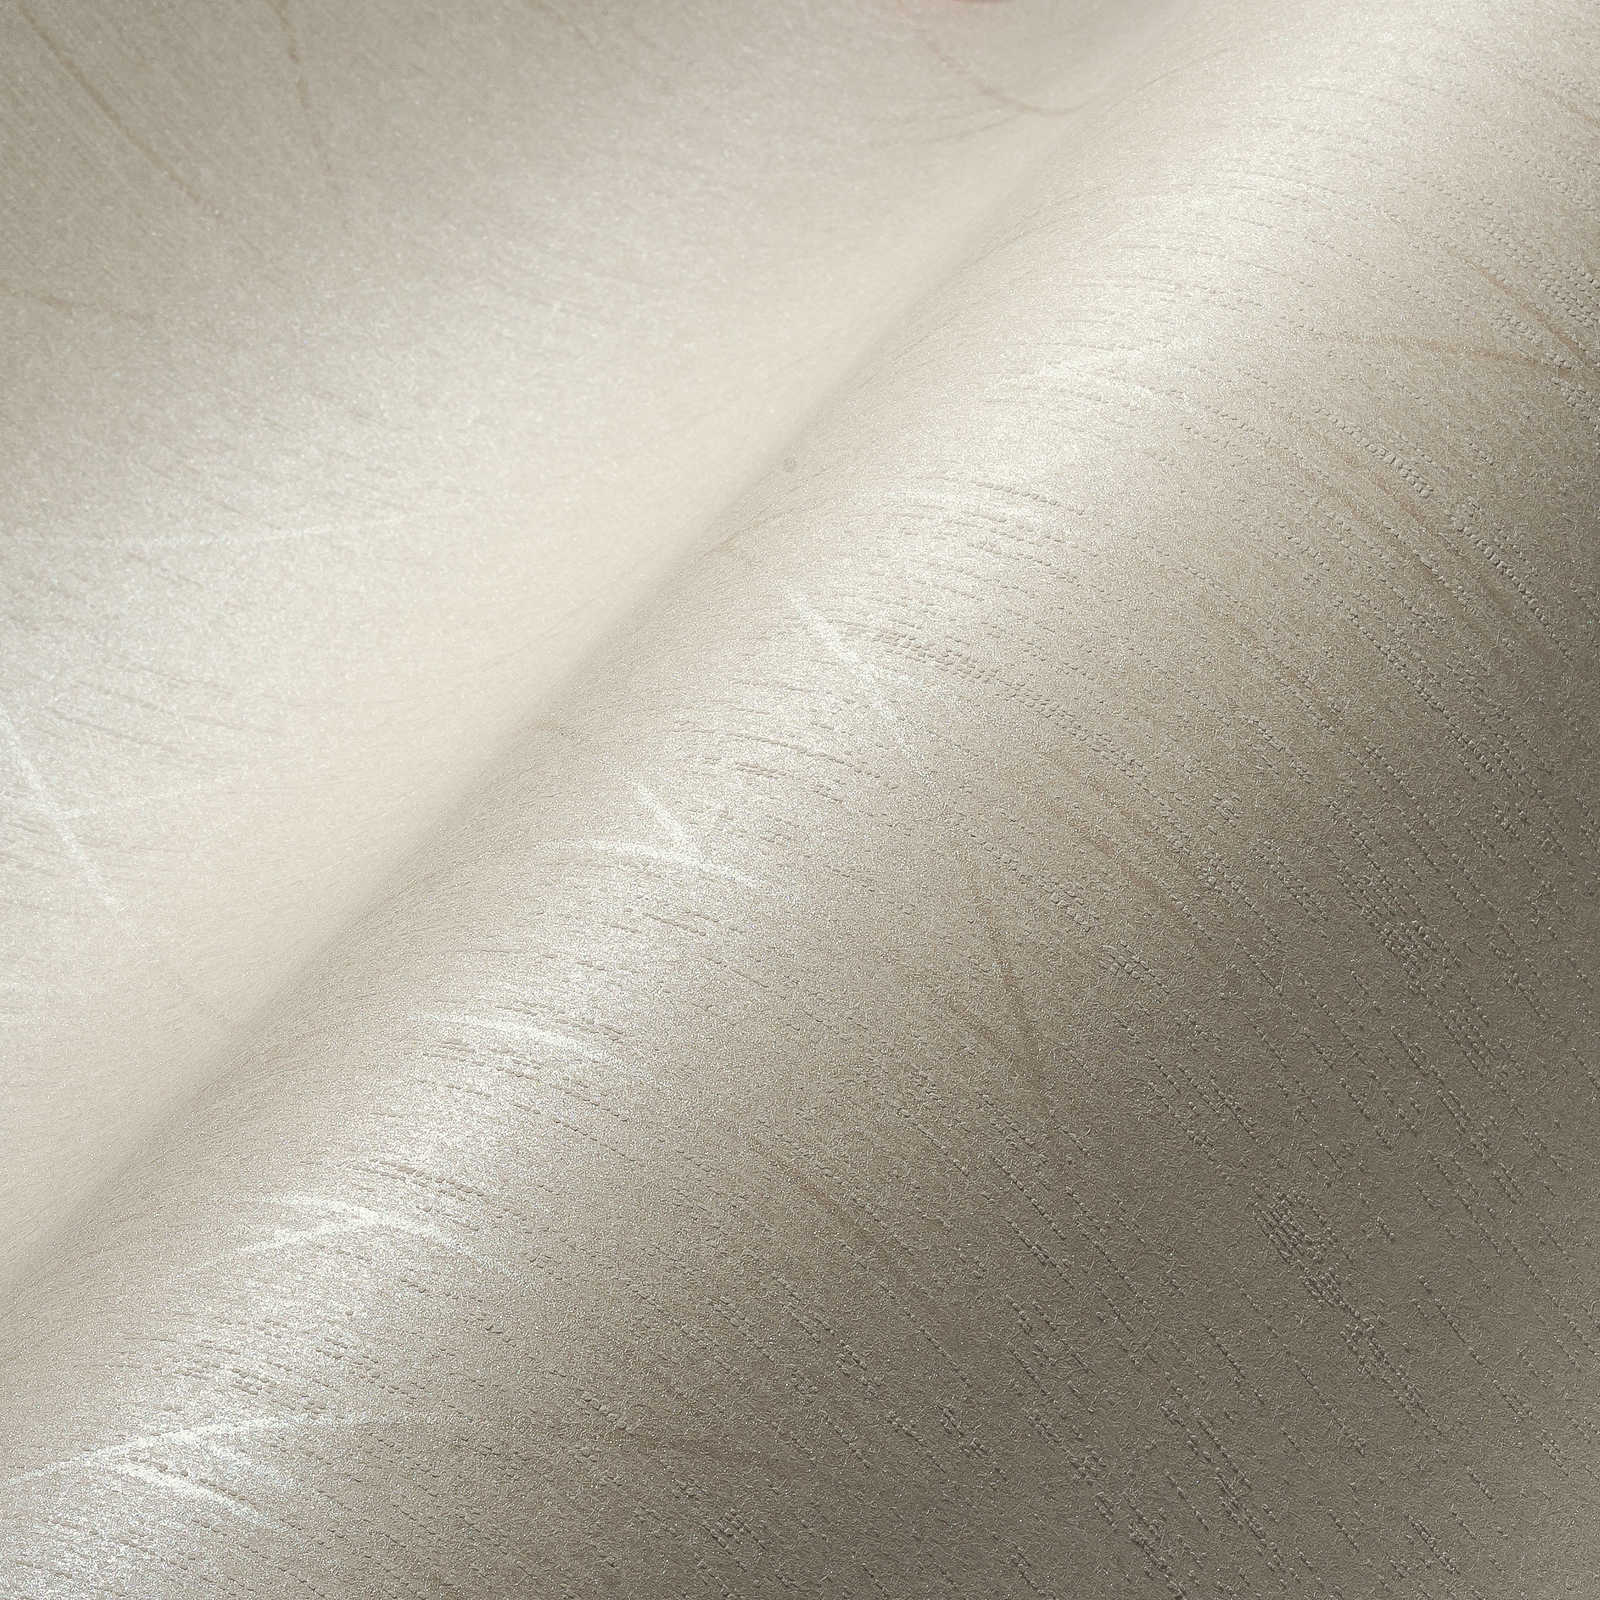             Papel pintado no tejido con efecto brillante y diseño gráfico - blanco
        